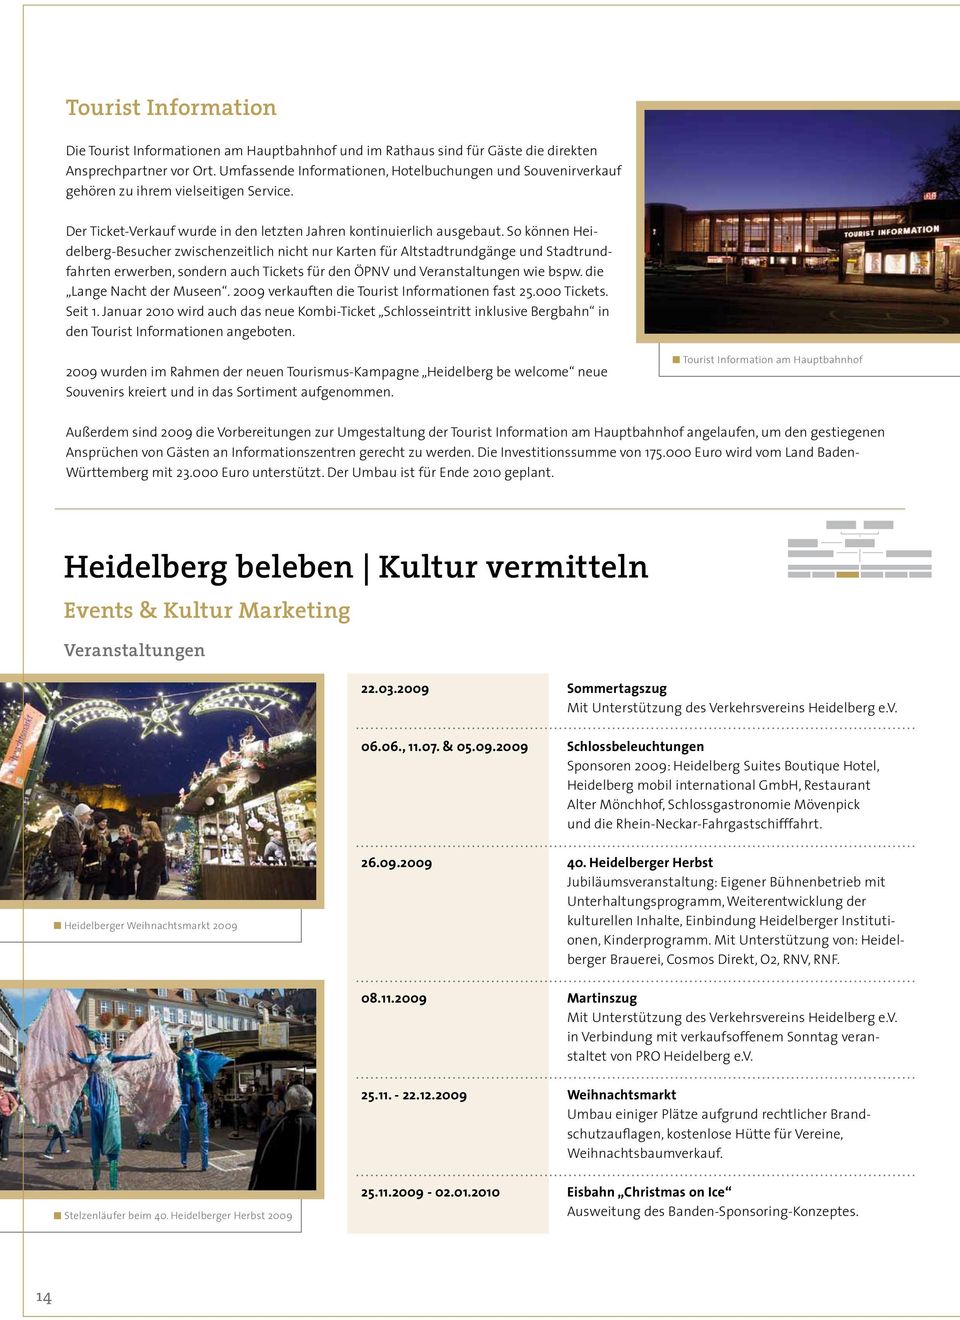 So können Heidelberg-Besucher zwischenzeitlich nicht nur Karten für Altstadtrundgänge und Stadtrundfahrten erwerben, sondern auch Tickets für den ÖPNV und Veranstaltungen wie bspw.